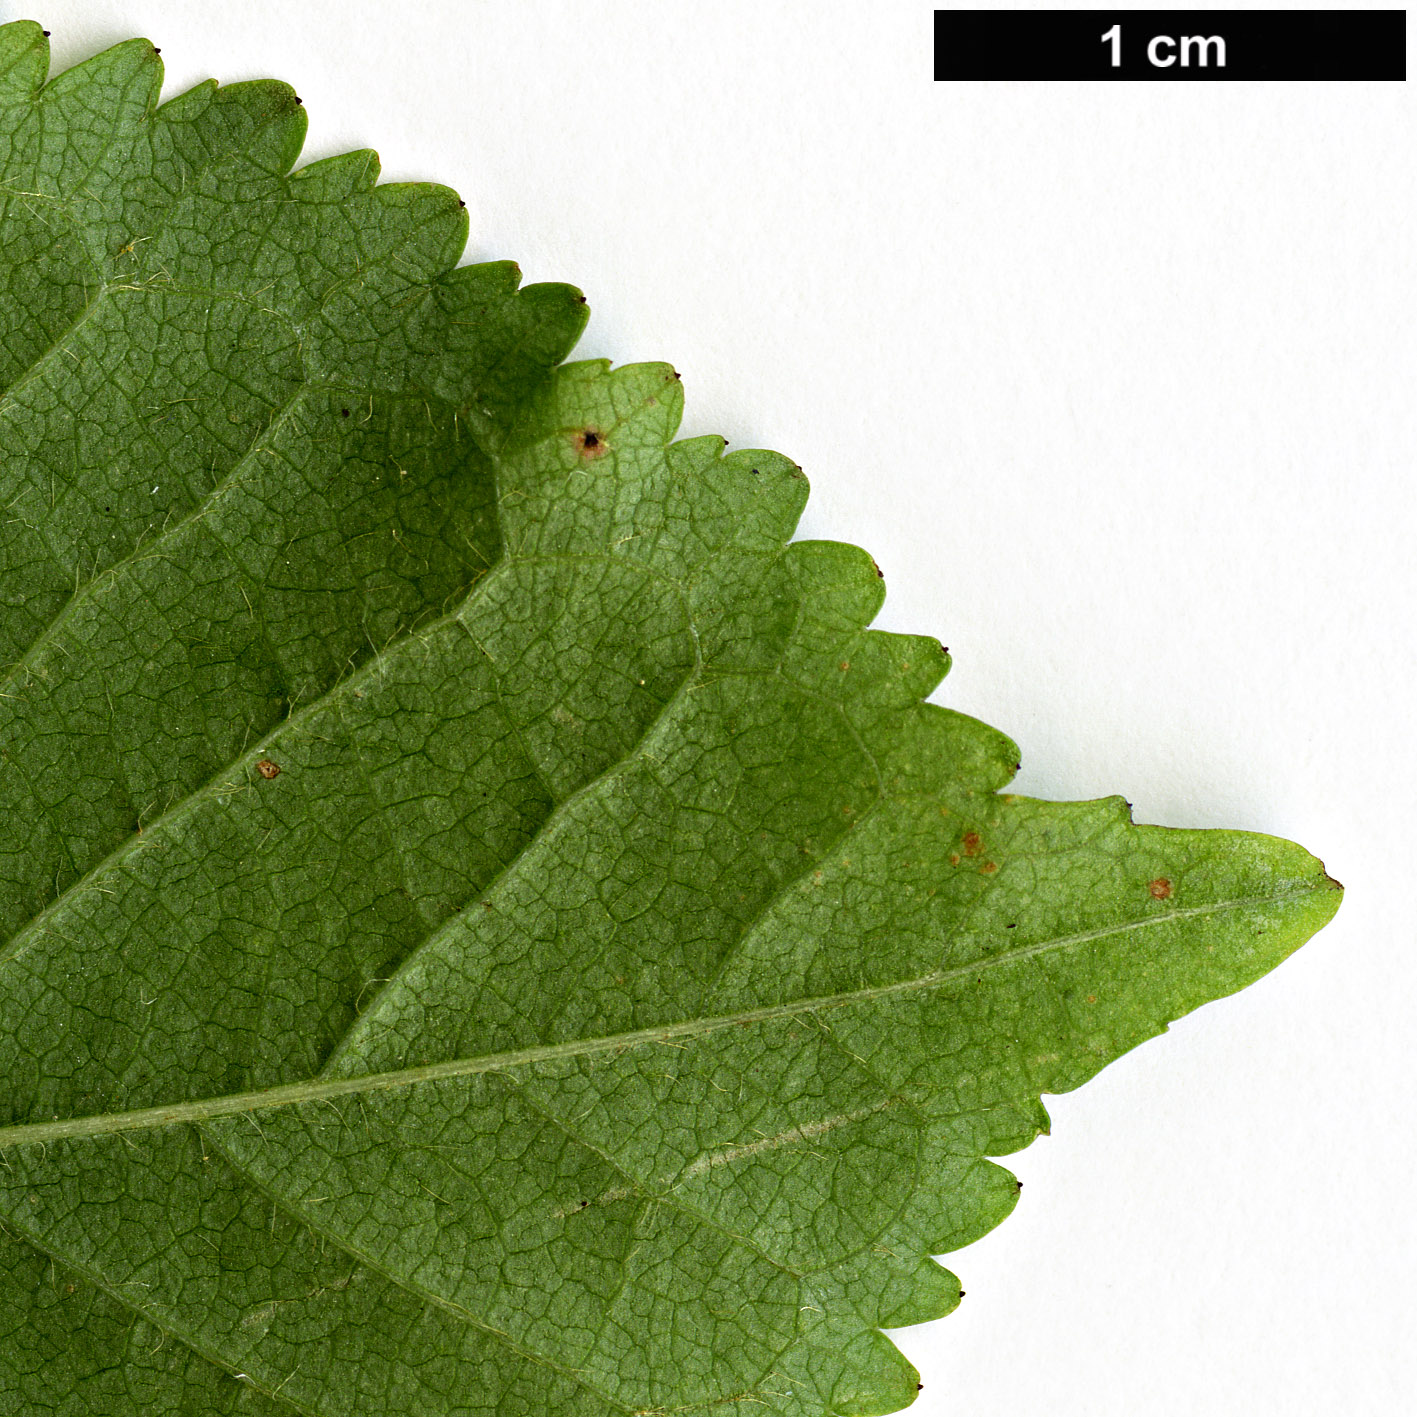 High resolution image: Family: Rosaceae - Genus: Prunus - Taxon: avium